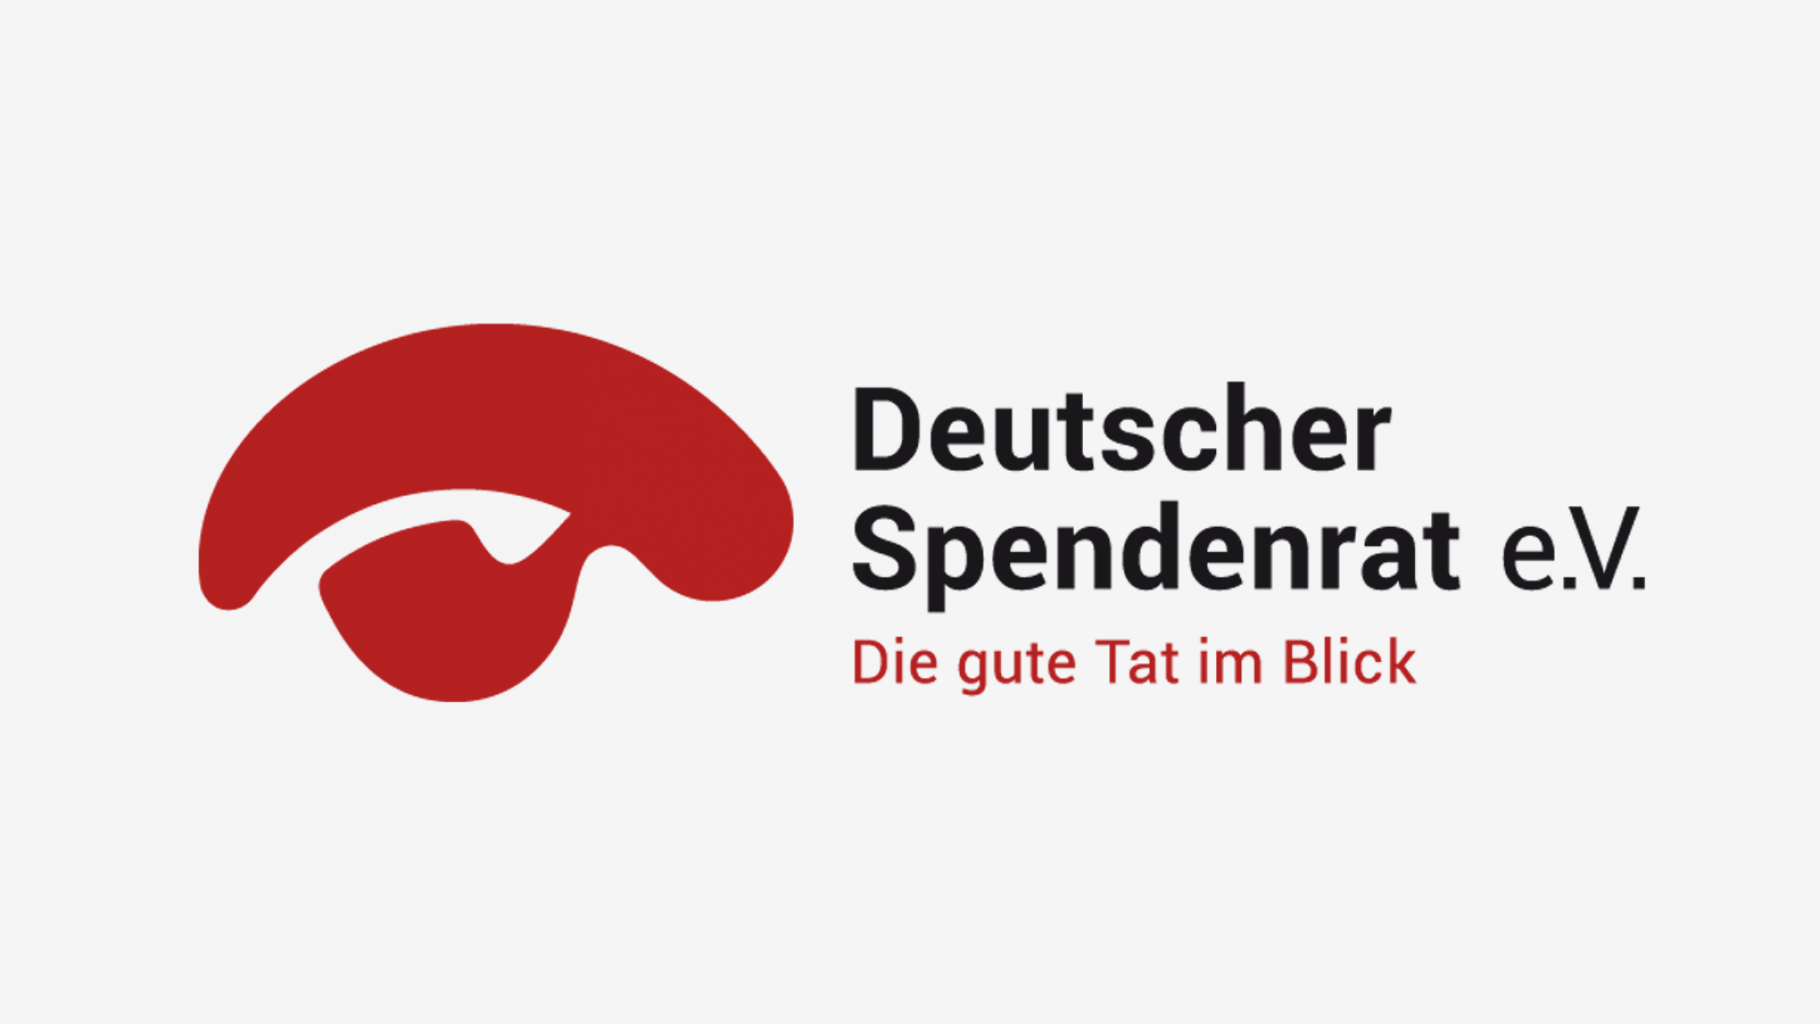 Deutscher Spendenrat e.V. Logo mit Claim